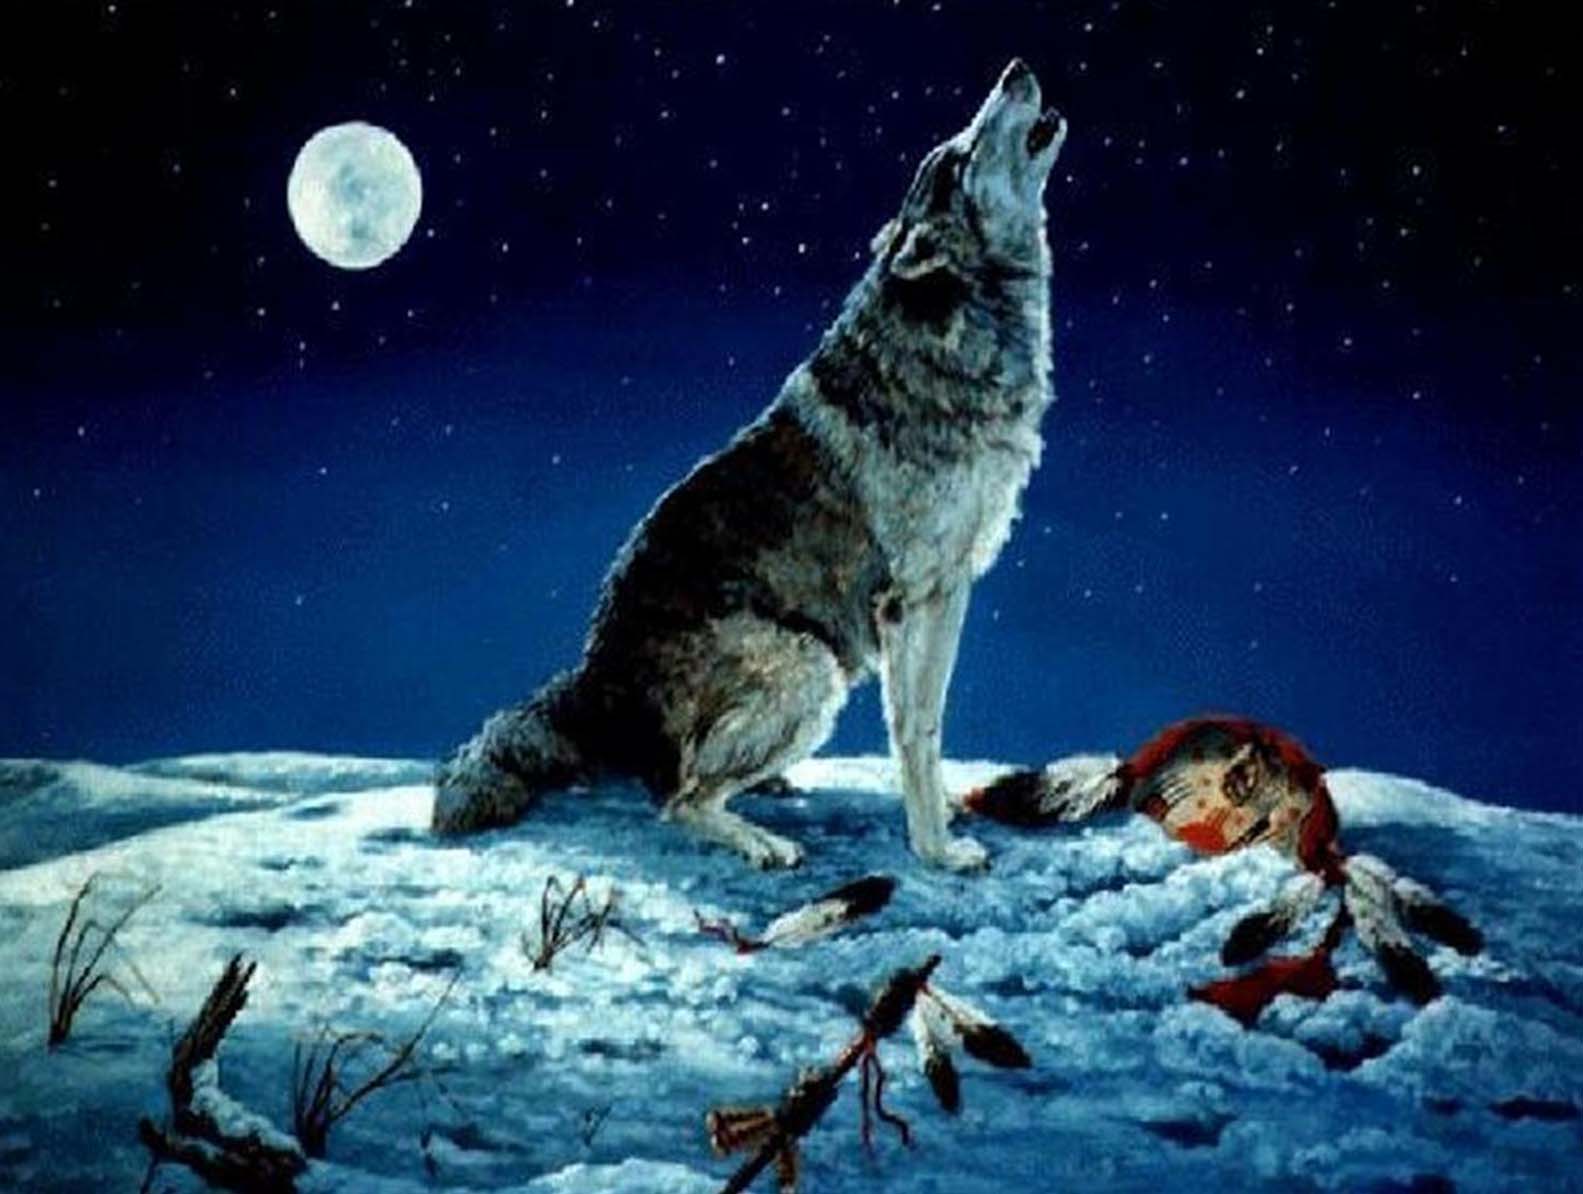 Волк воет на луну в полный рост